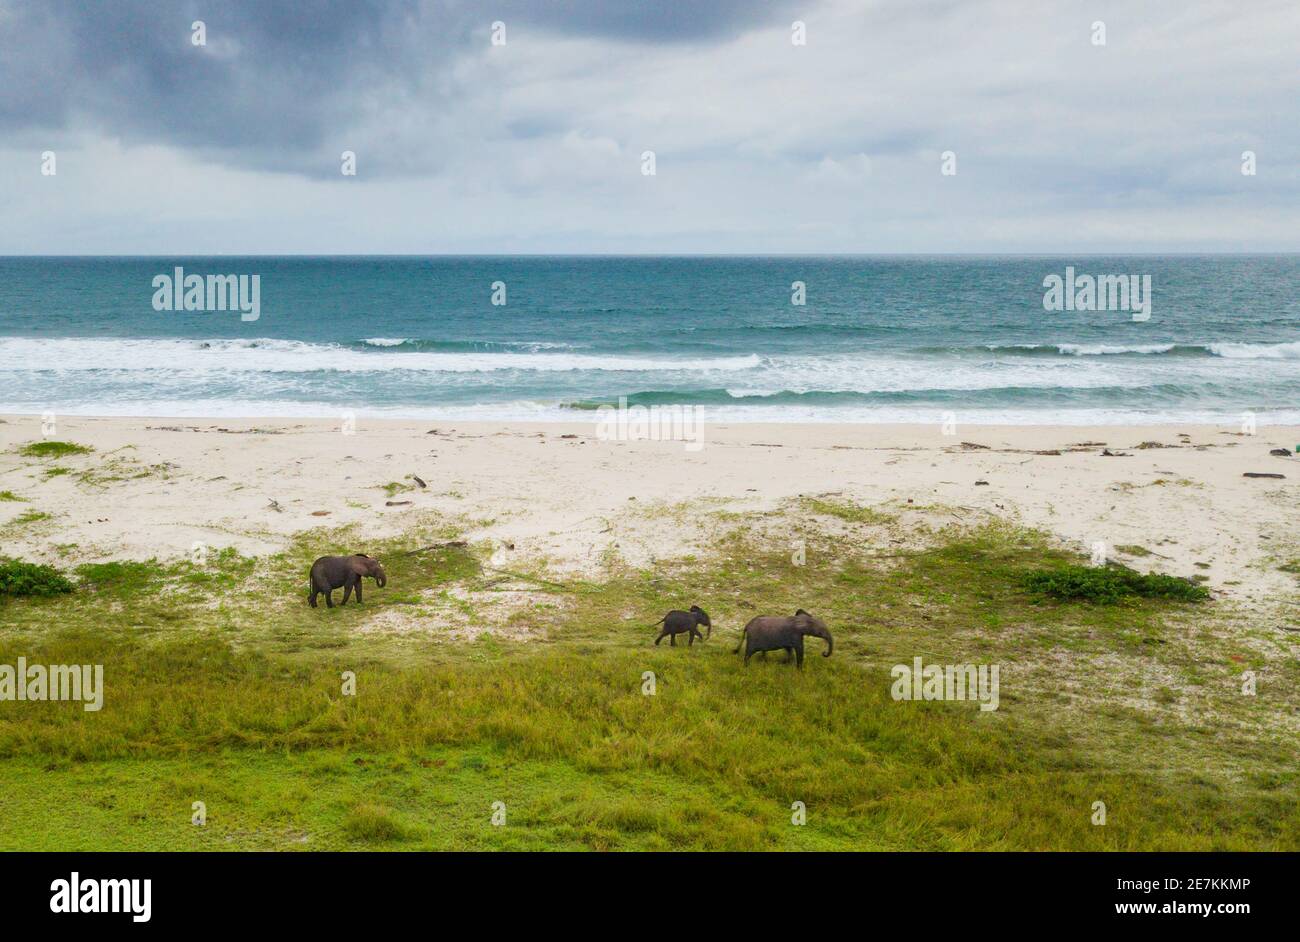 Grupo de elefantes forestales africanos (Loxodonta cyclotis) en la playa, Parque Nacional Loango, Gabón, África central. Foto de stock